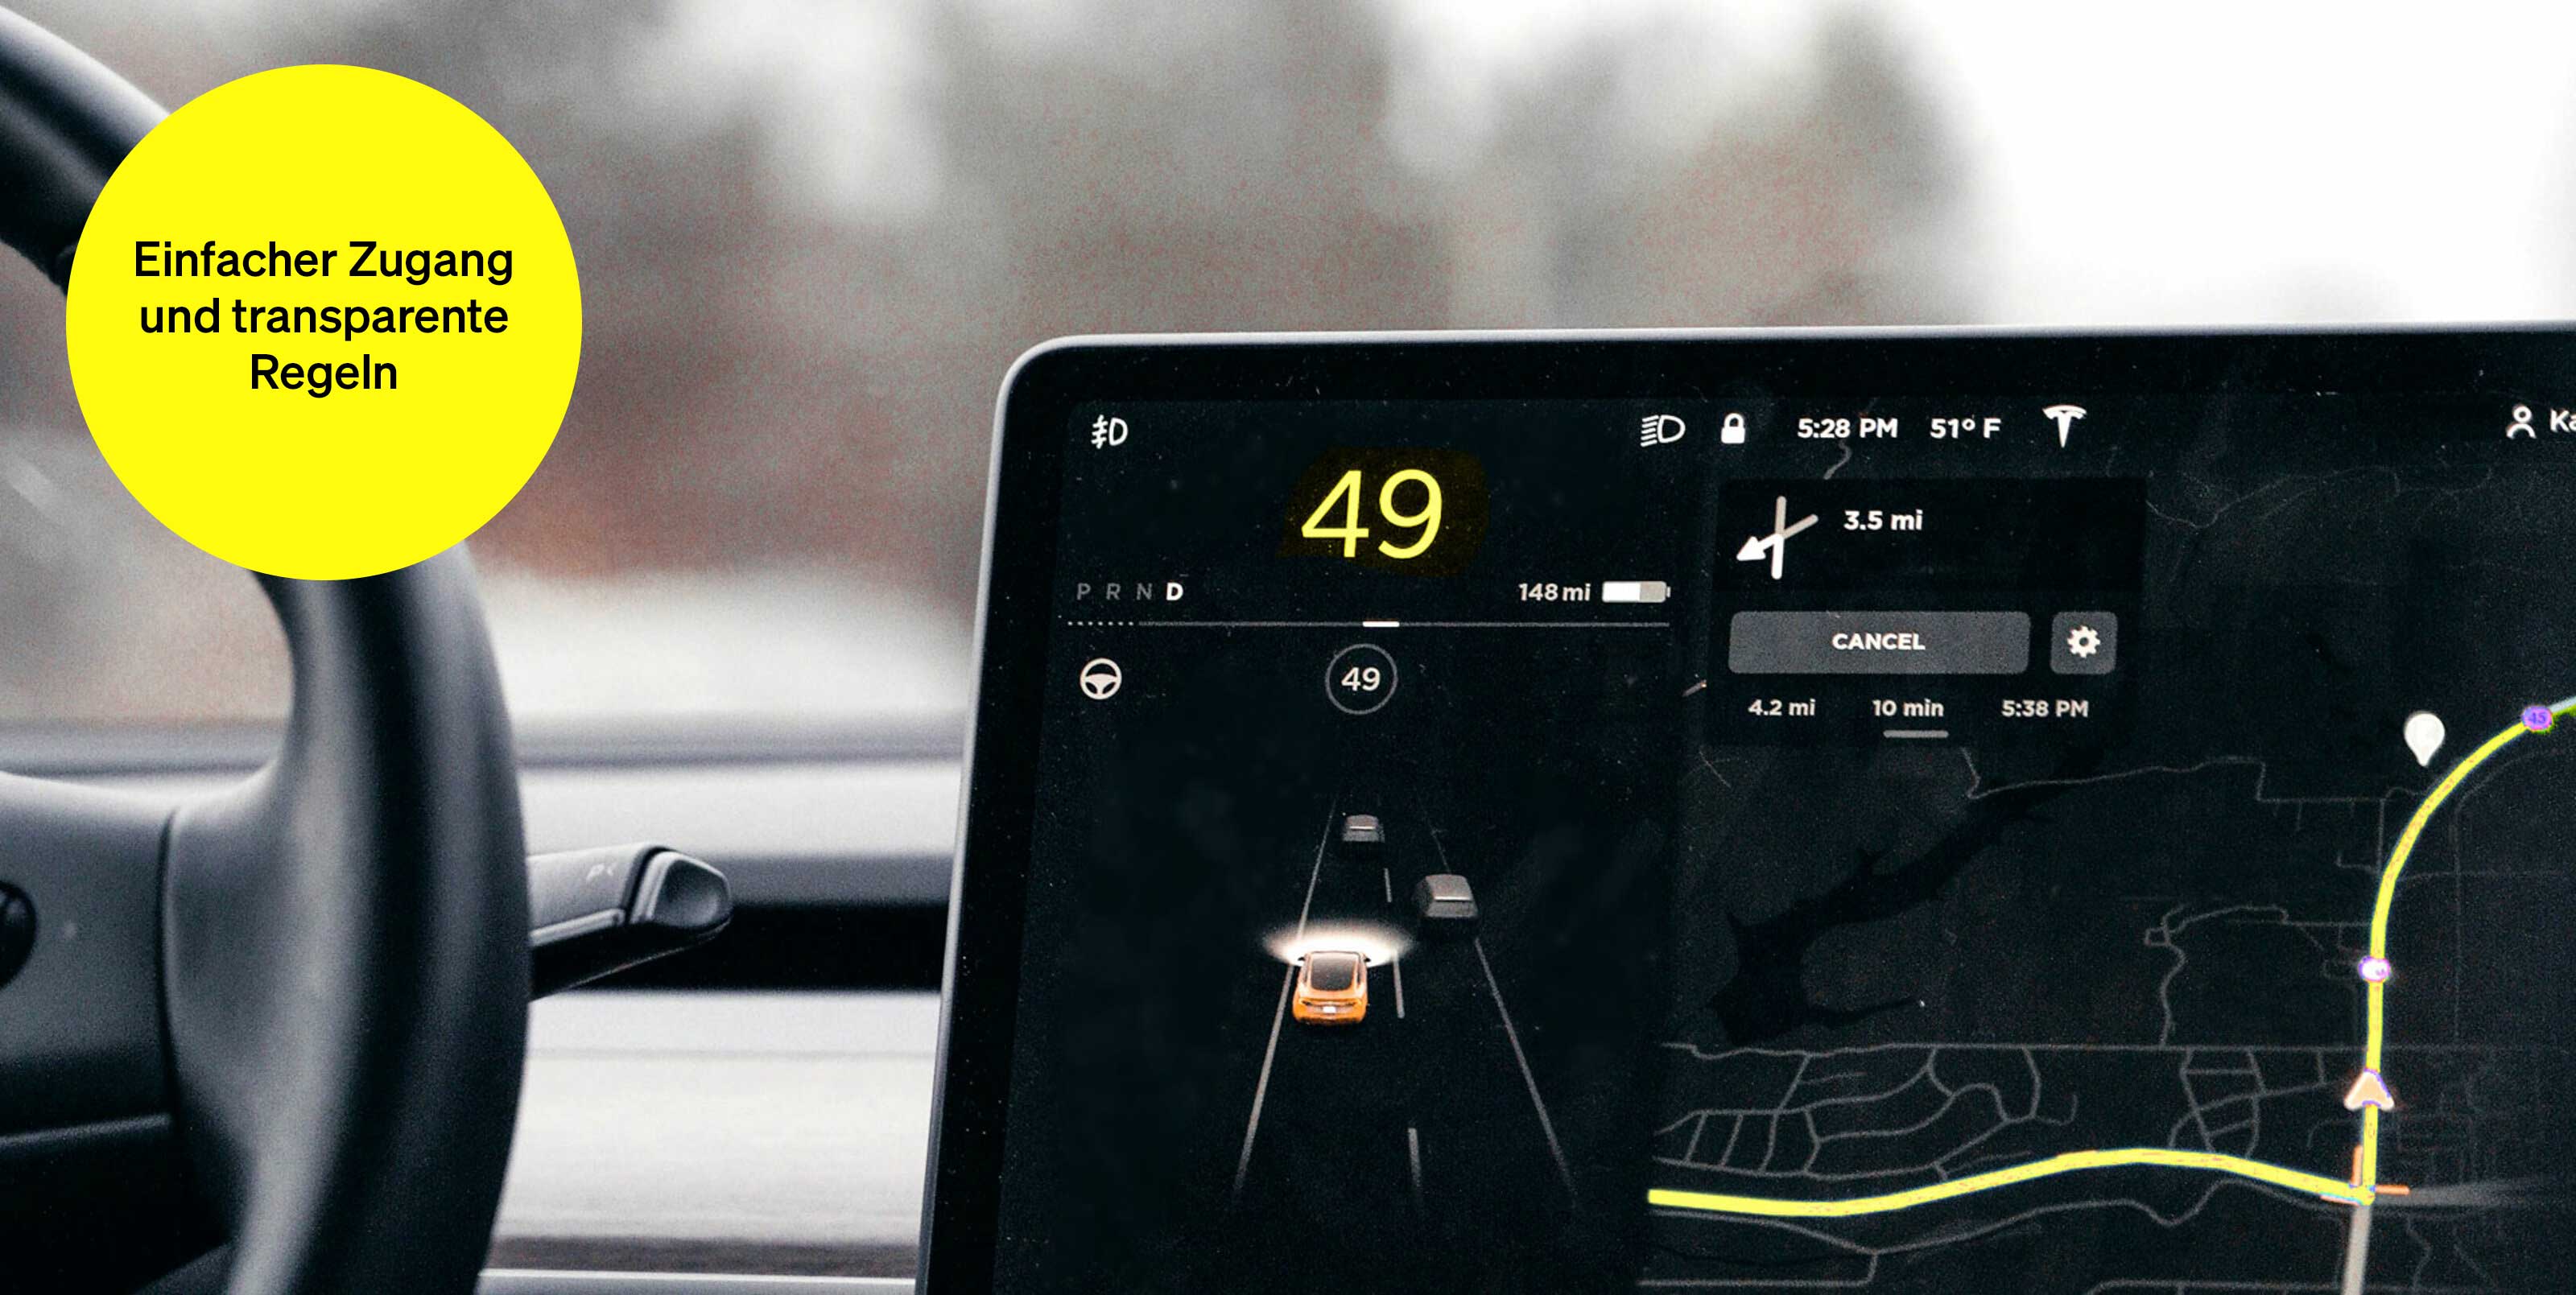 Navigationssystem im Auto – Textbaustein in runder Kachel: Einfacher Zugang und transparente Regeln